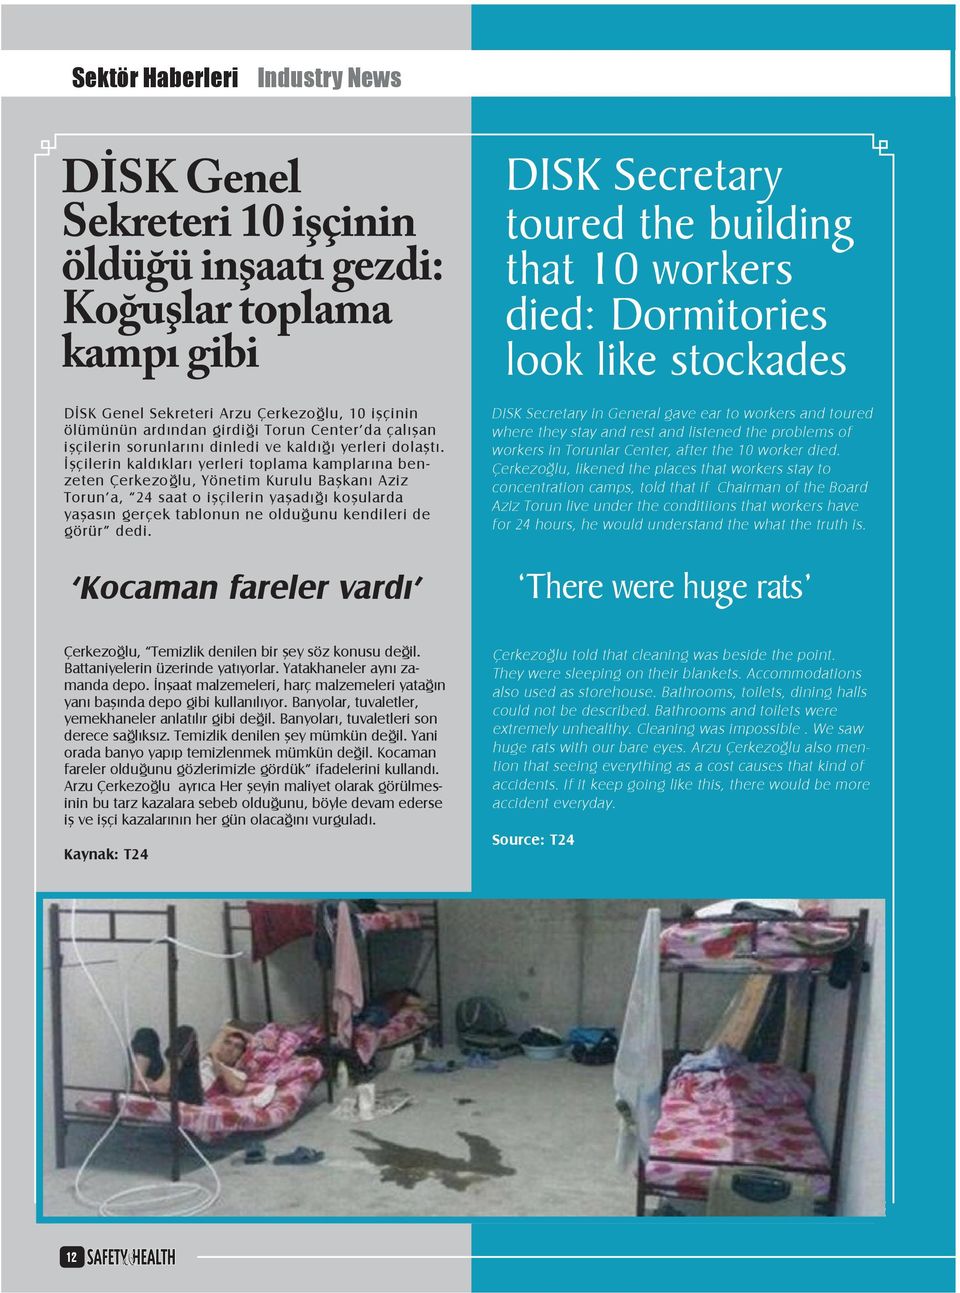 İşçilerin kaldıkları yerleri toplama kamplarına benzeten Çerkezoğlu, Yönetim Kurulu Başkanı Aziz Torun a, 24 saat o işçilerin yaşadığı koşularda yaşasın gerçek tablonun ne olduğunu kendileri de görür